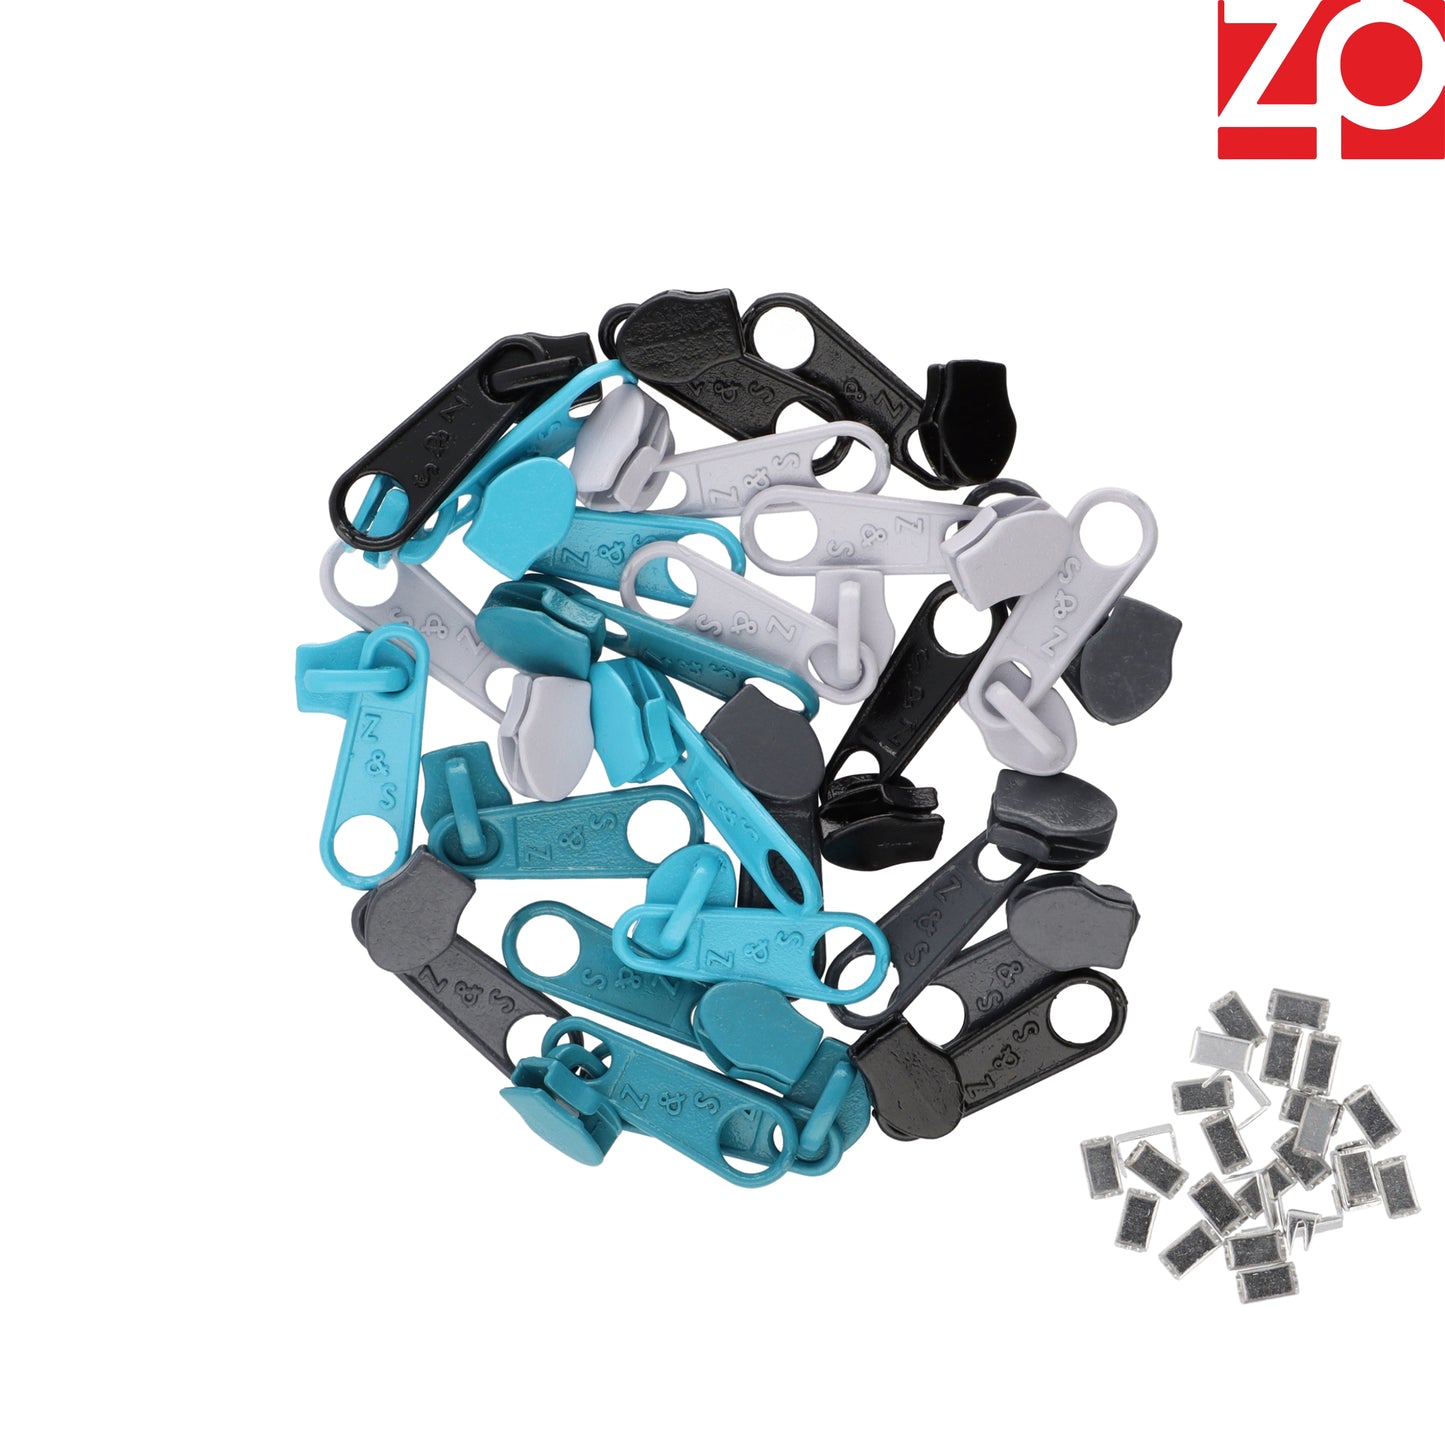 ZIPP AND SLIDE - Endlos Reißverschluss Set mit Zipper 3mm 12,5 Meter - nickelfrei - Farbsetnr. 7 Das Original